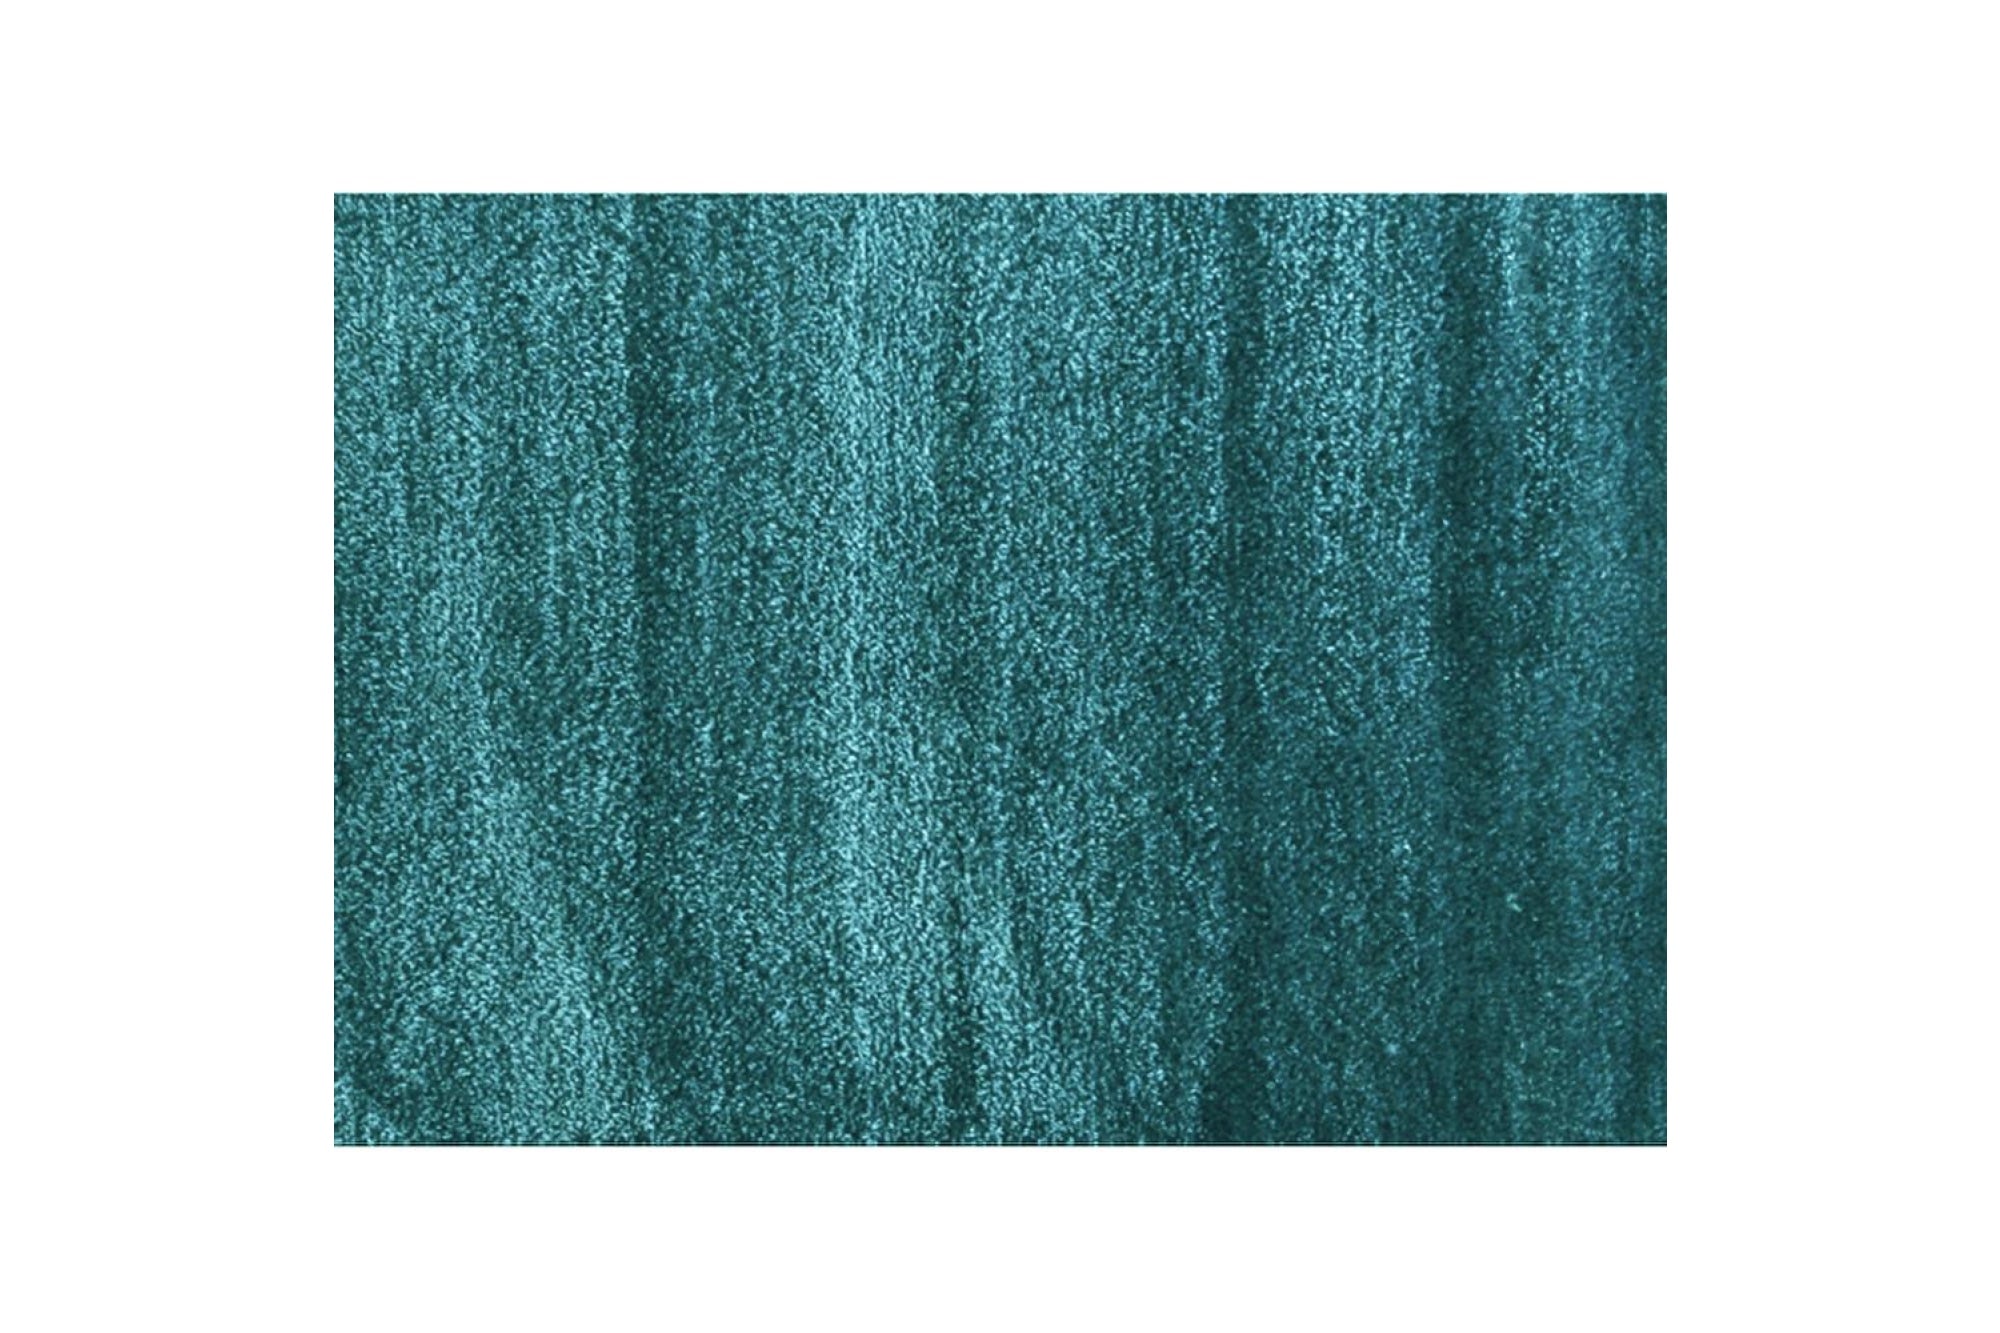 ARUNA kék polyester szőnyeg 200x300cm